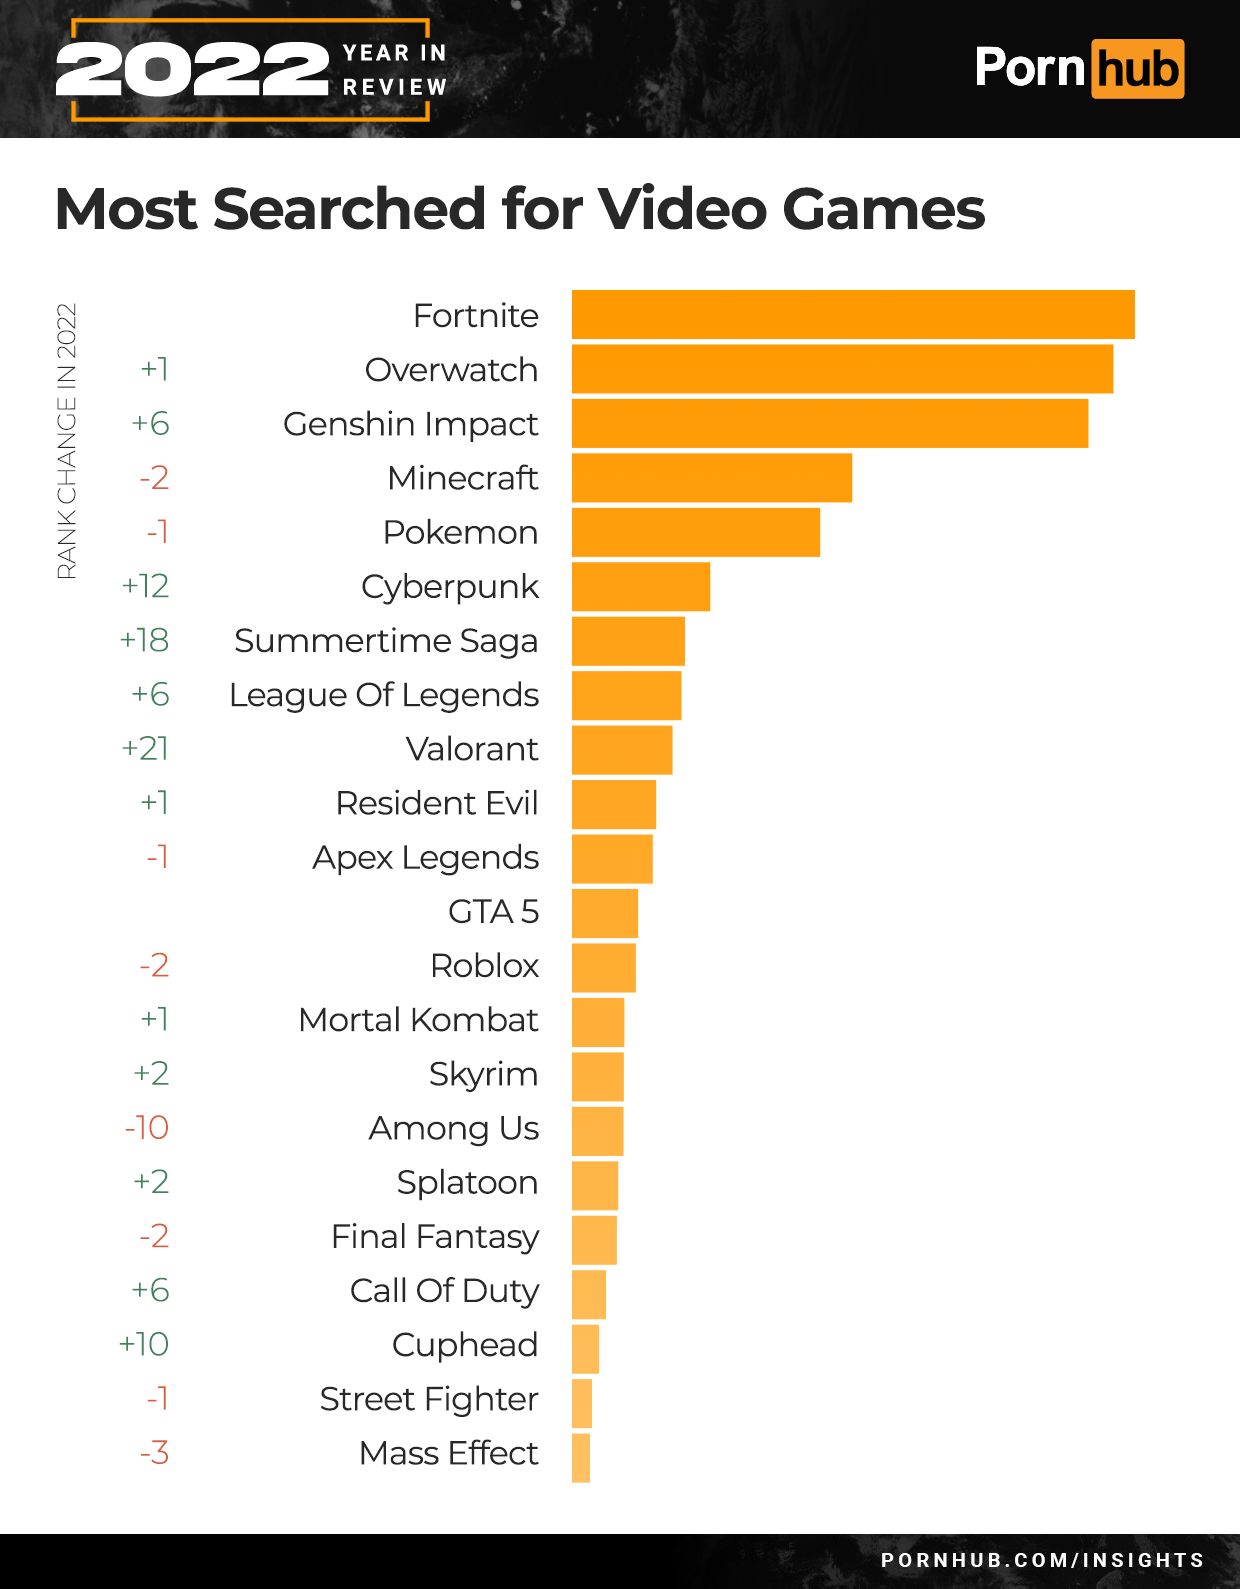 Самые популярные видеоигры. Источник: Pornhub